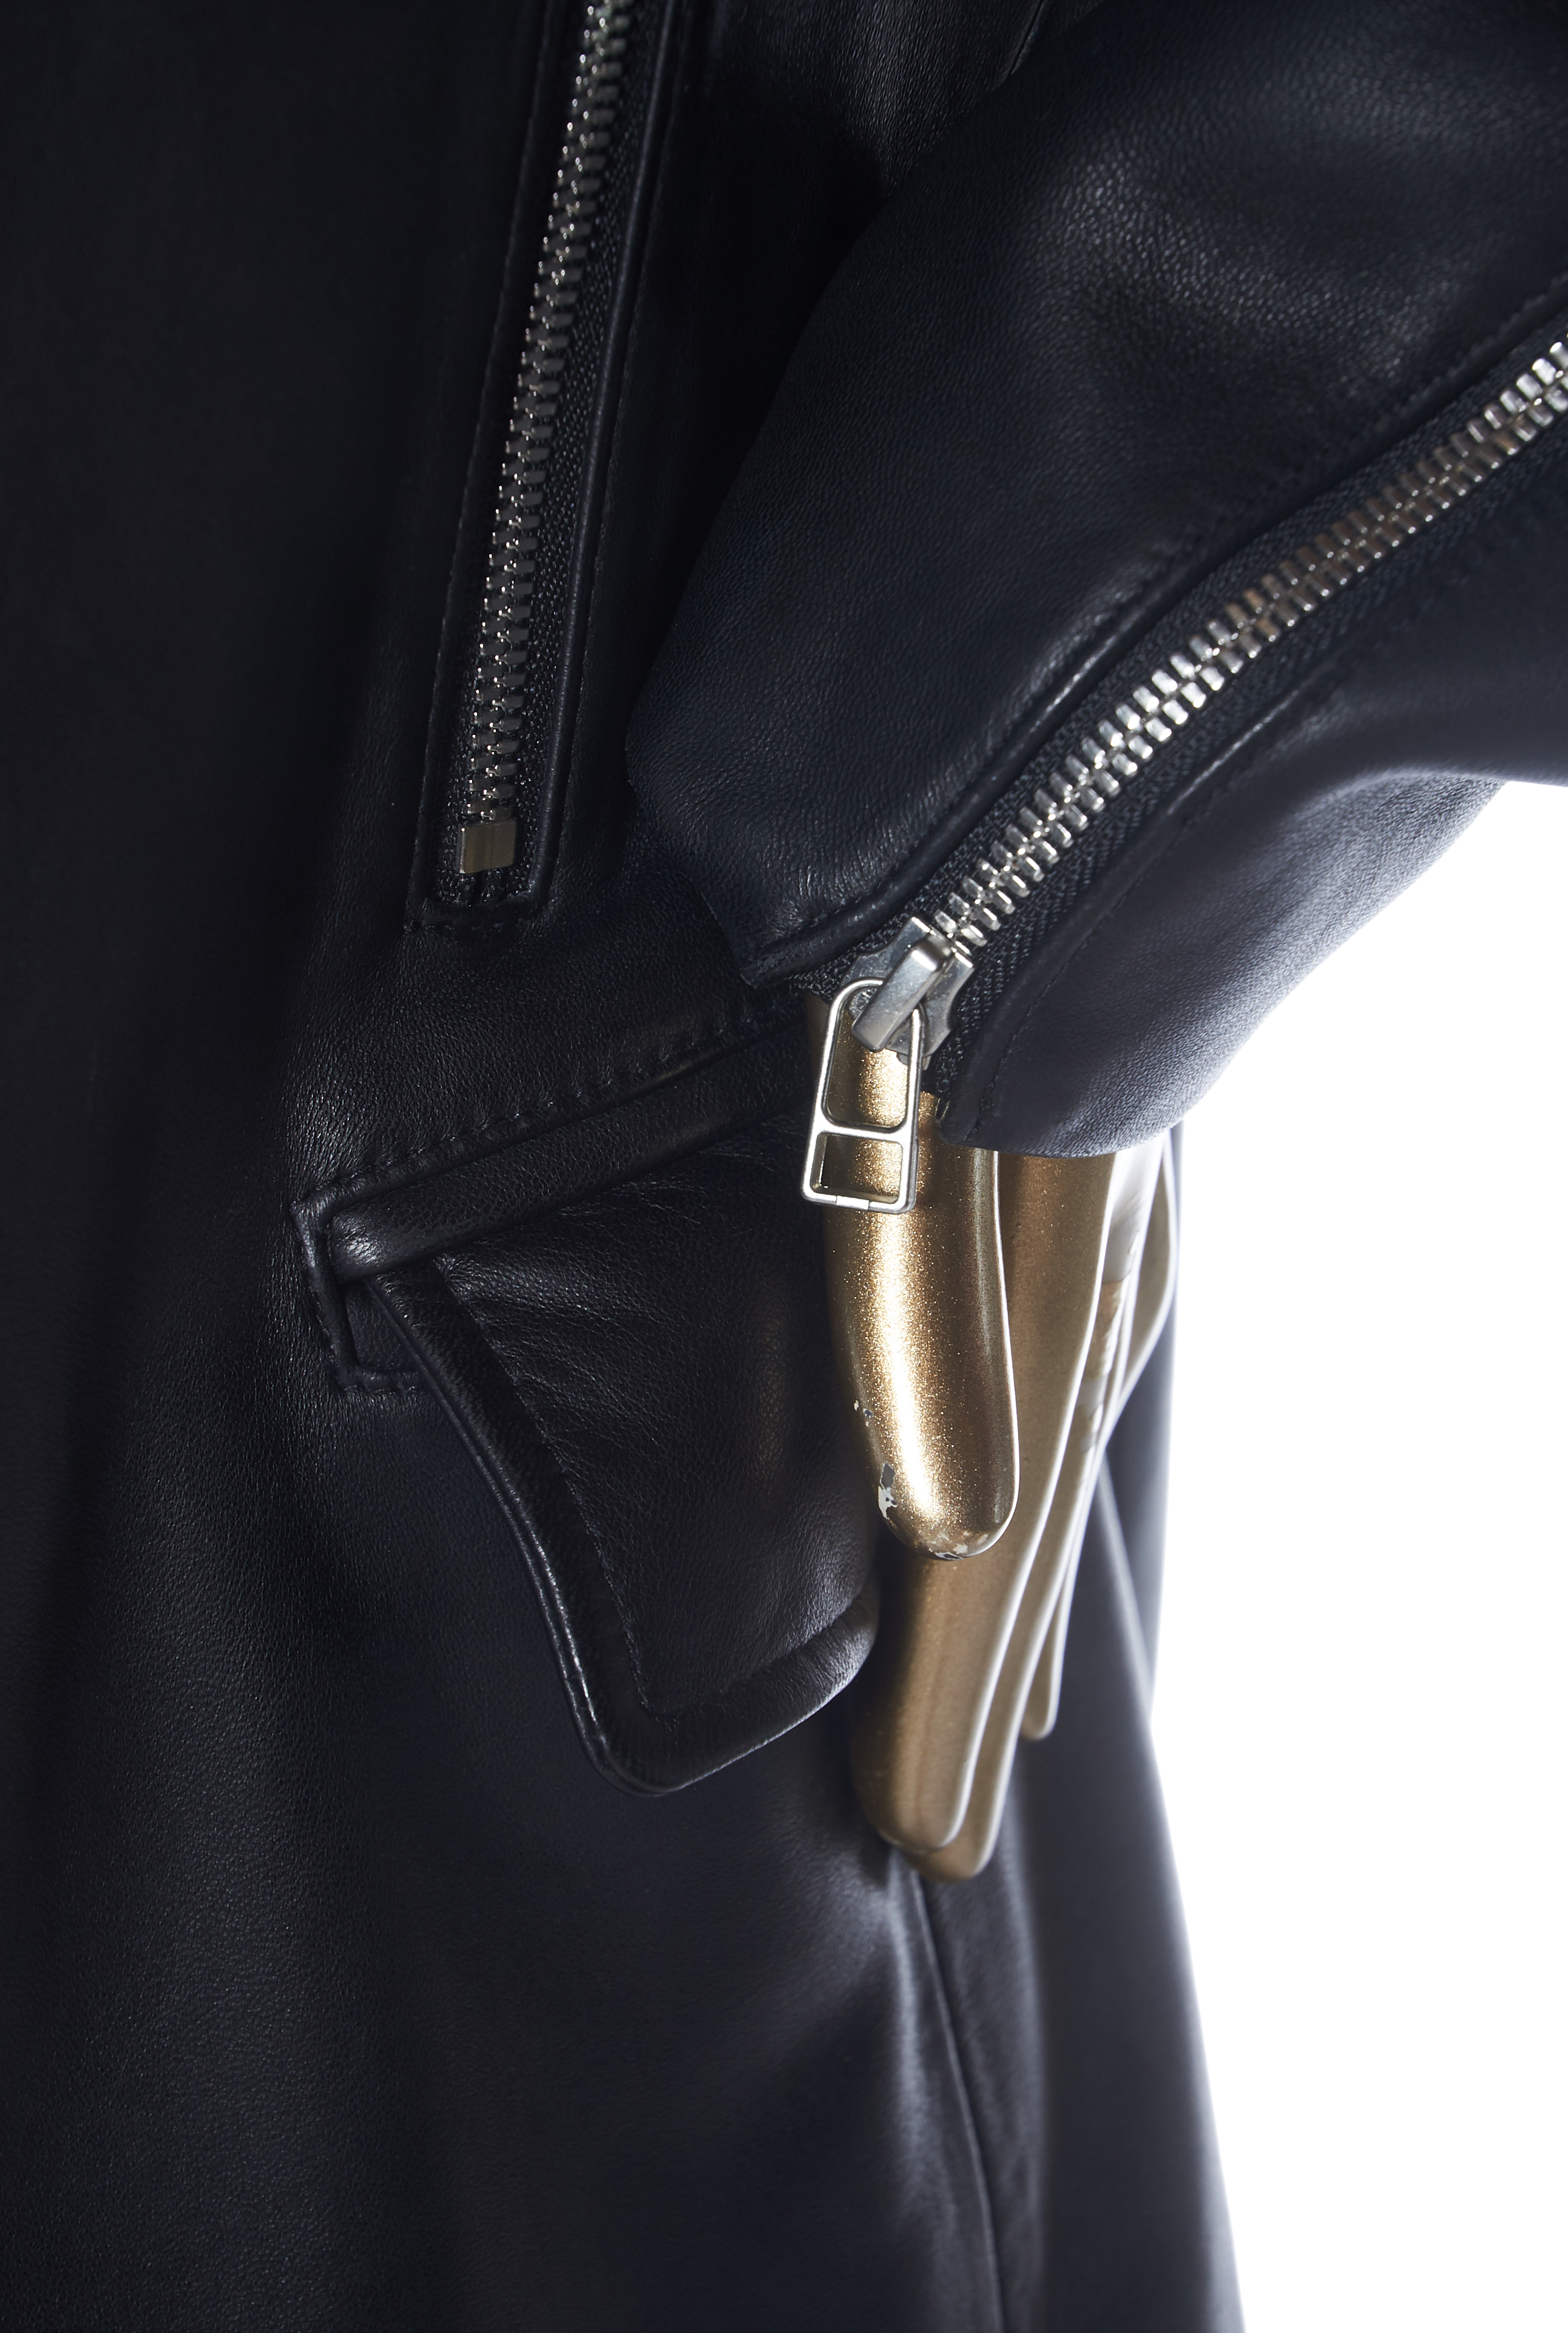 Thomas Wylde Leather Zip-Up Jacket - Janet Mandell